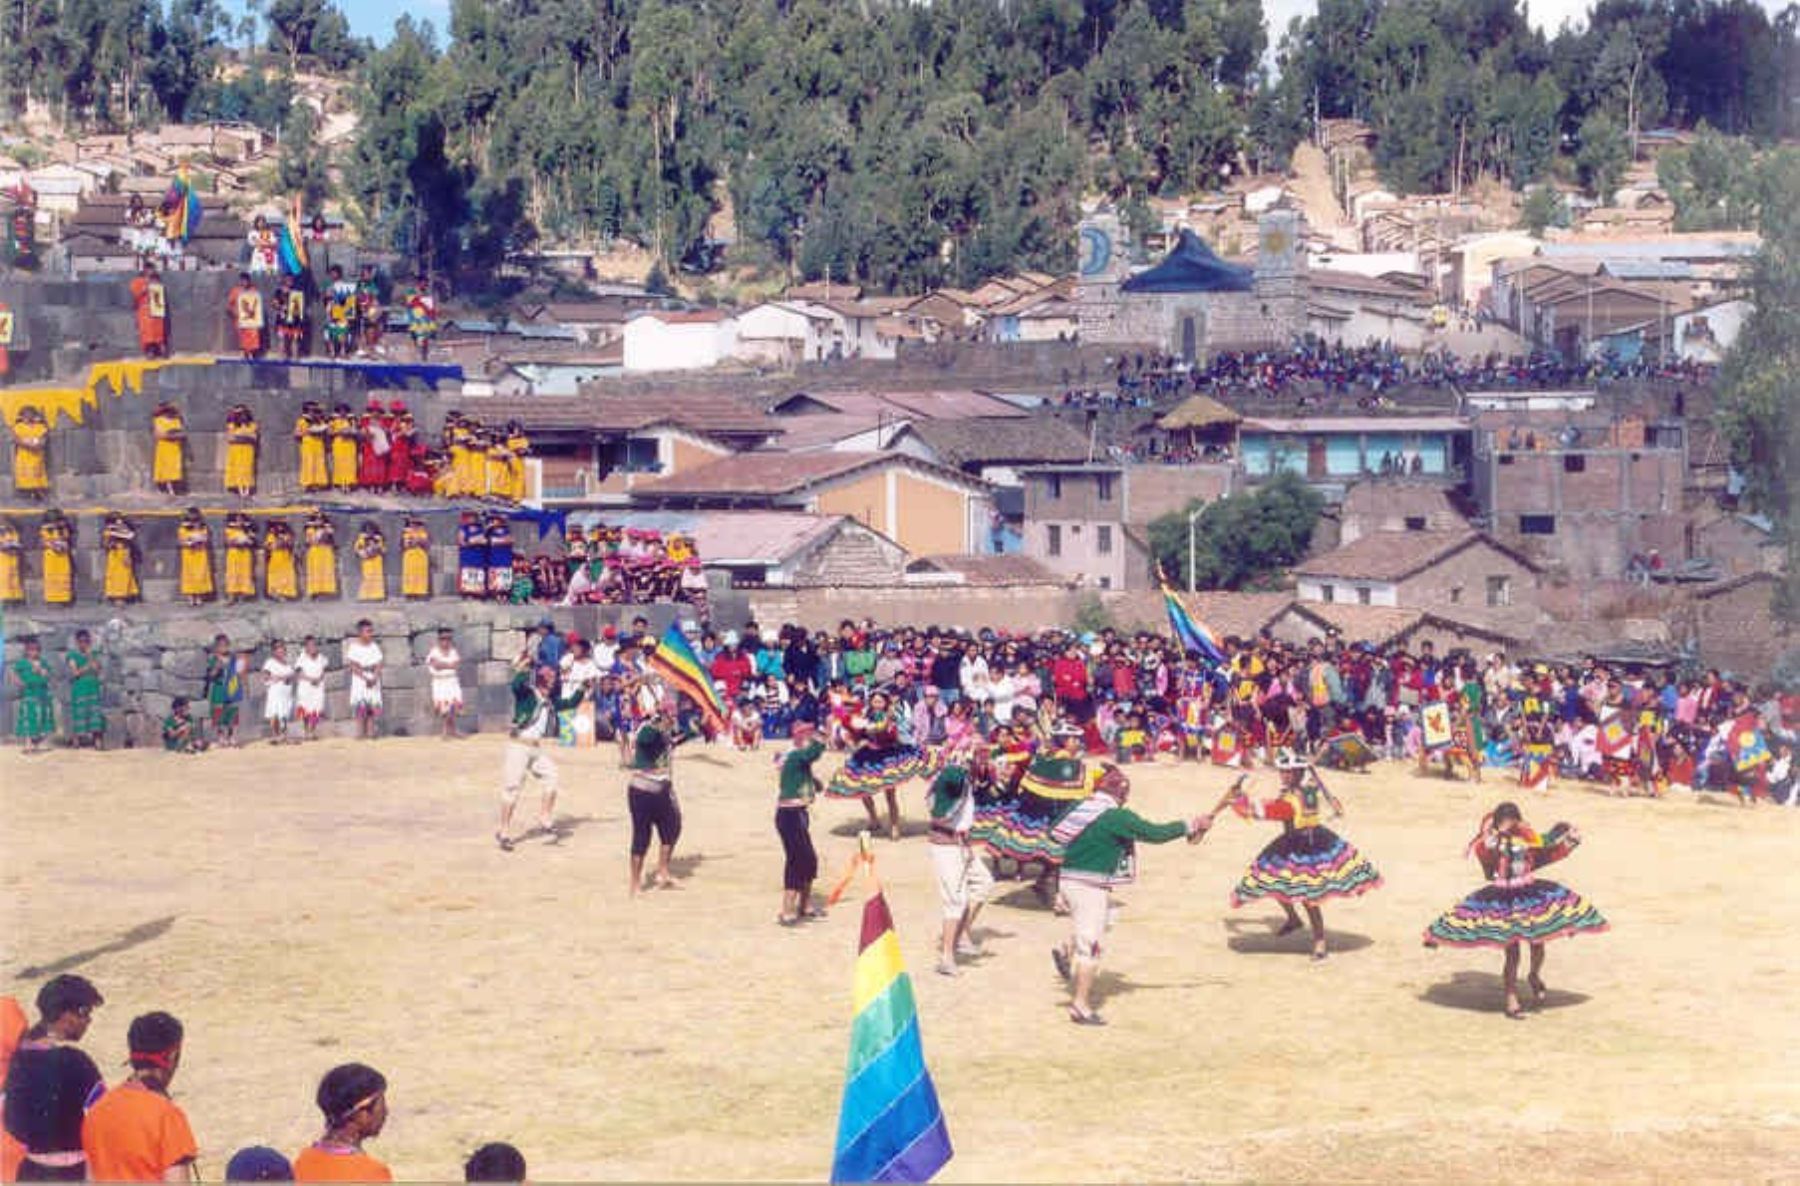 The Vilcas Raymi Festival